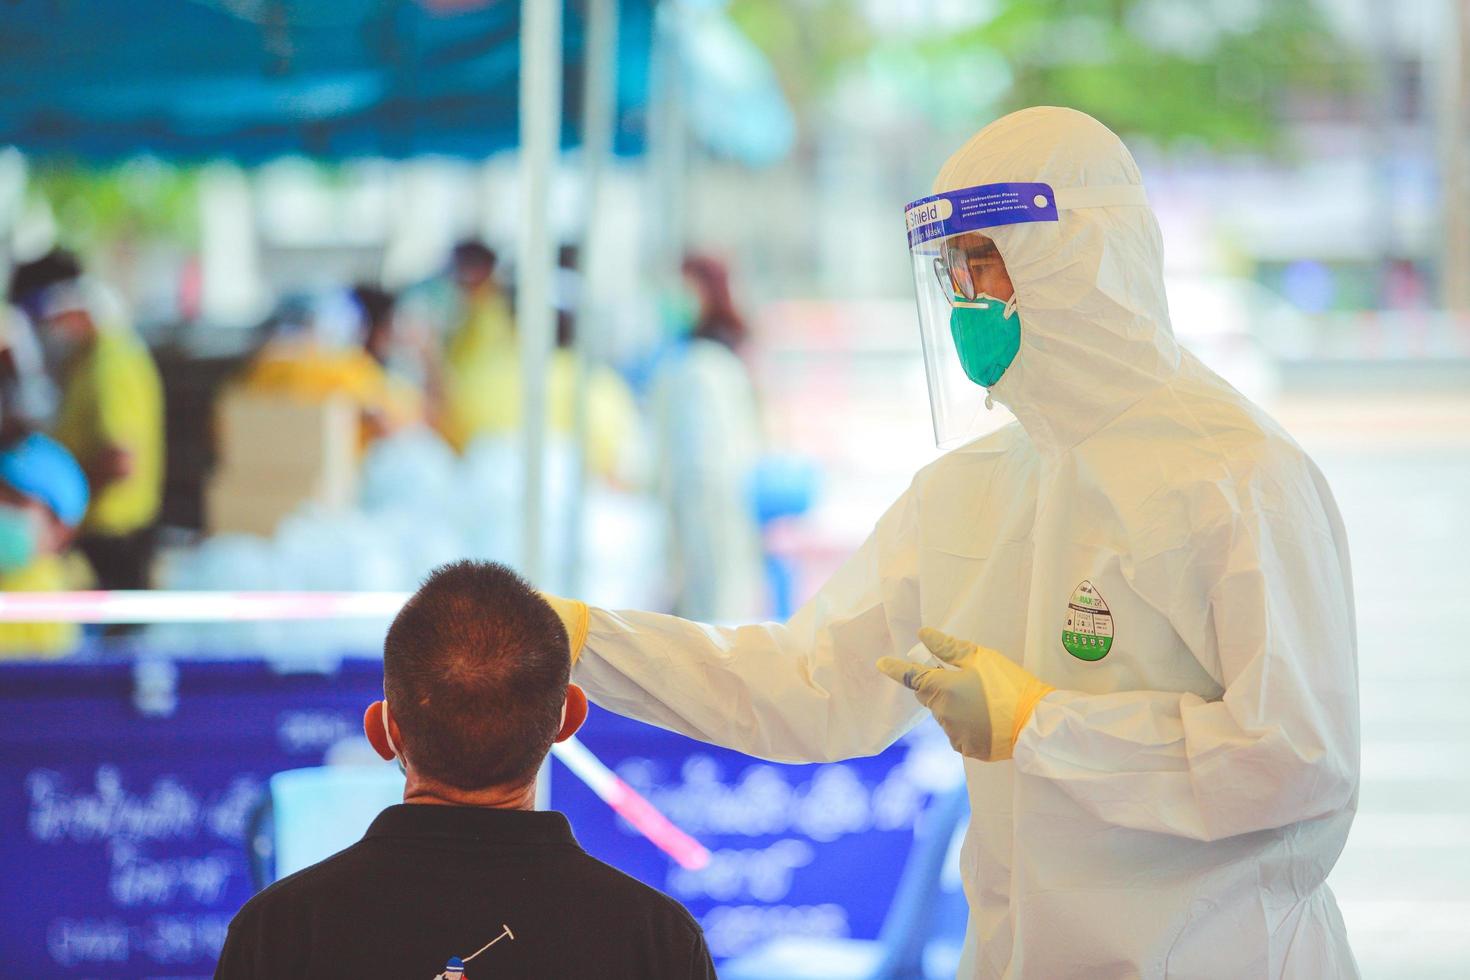 nakhon ratchasima, thailand - 24. april 2021 technische offiziere des öffentlichen gesundheitswesens sammeln absonderungspersonen für proaktives screenen covid19. foto